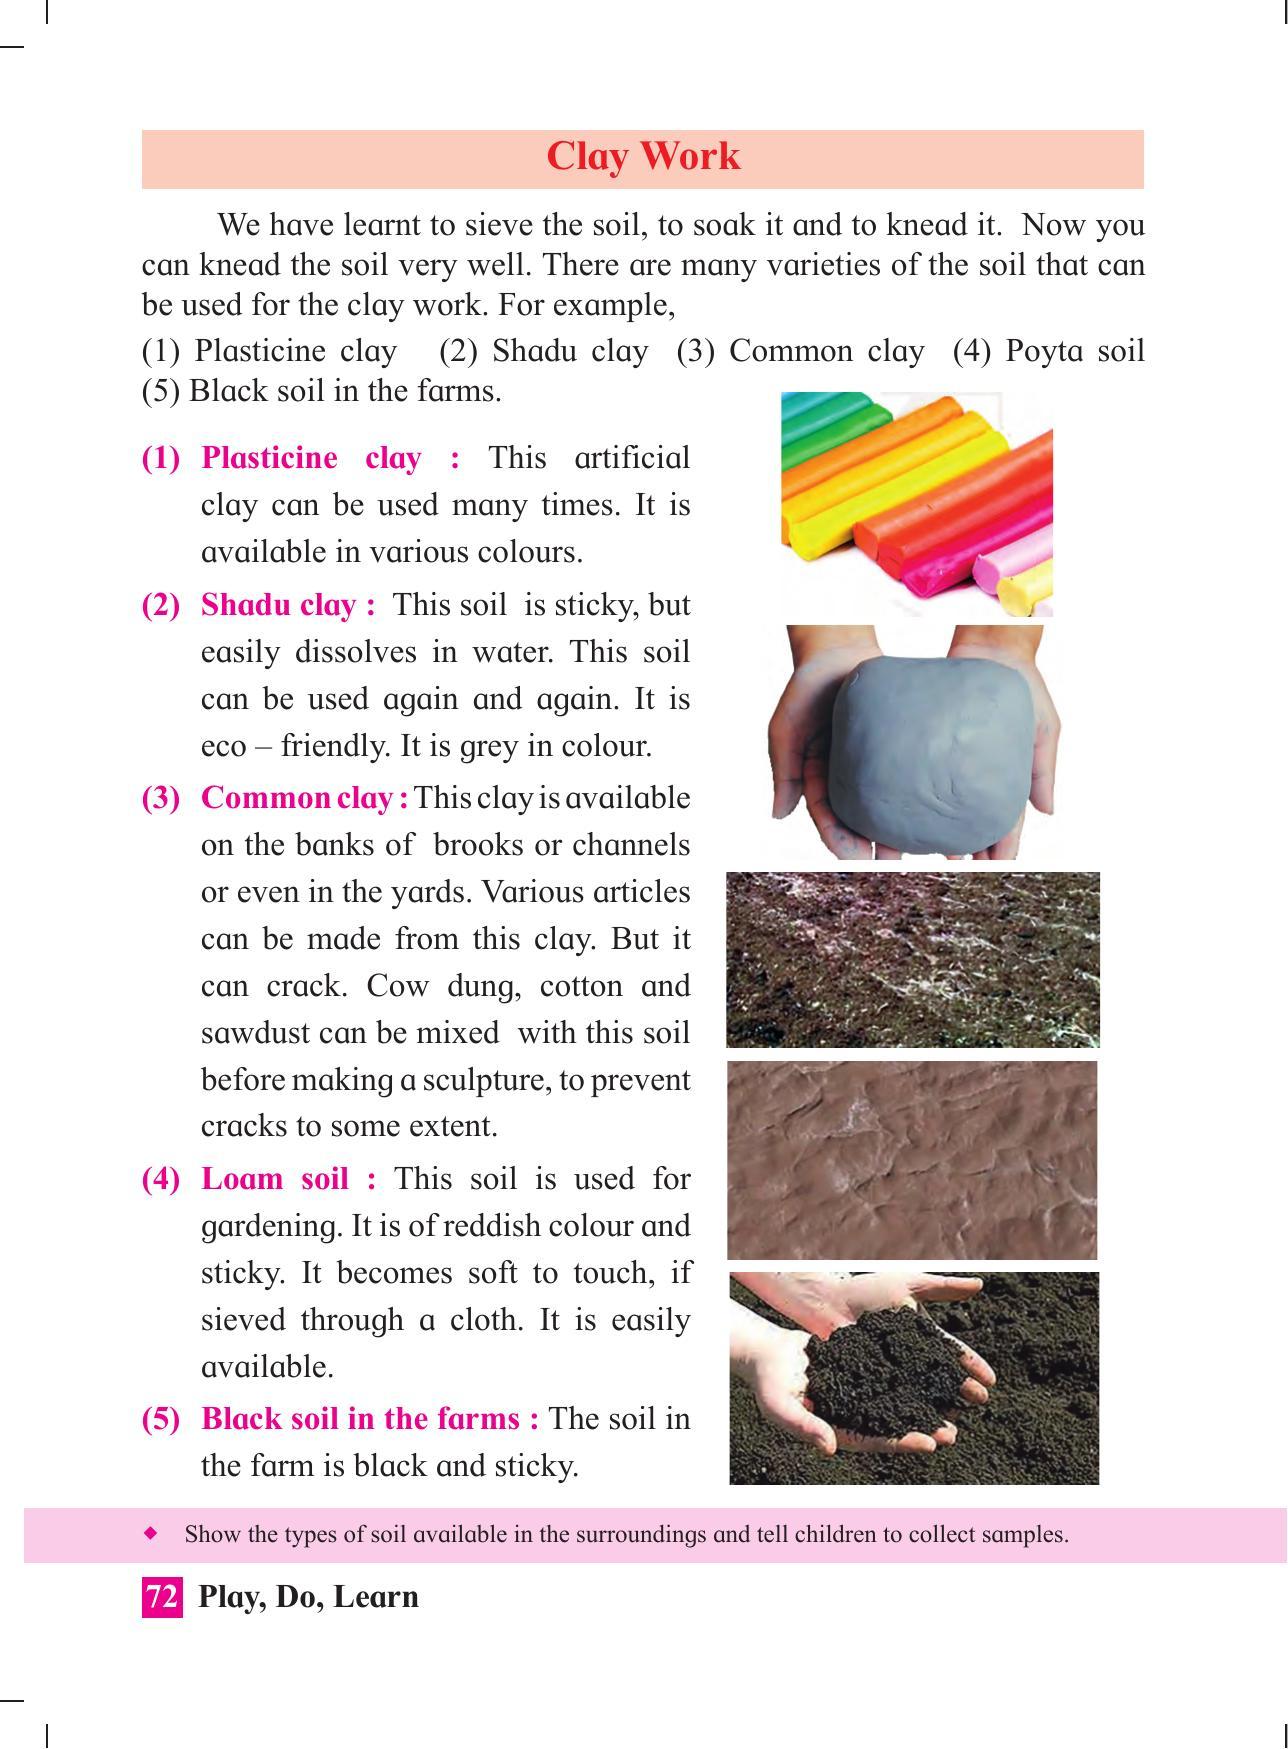 Maharashtra Board Class 4 Play Do Learn (English Medium) Textbook - Page 81